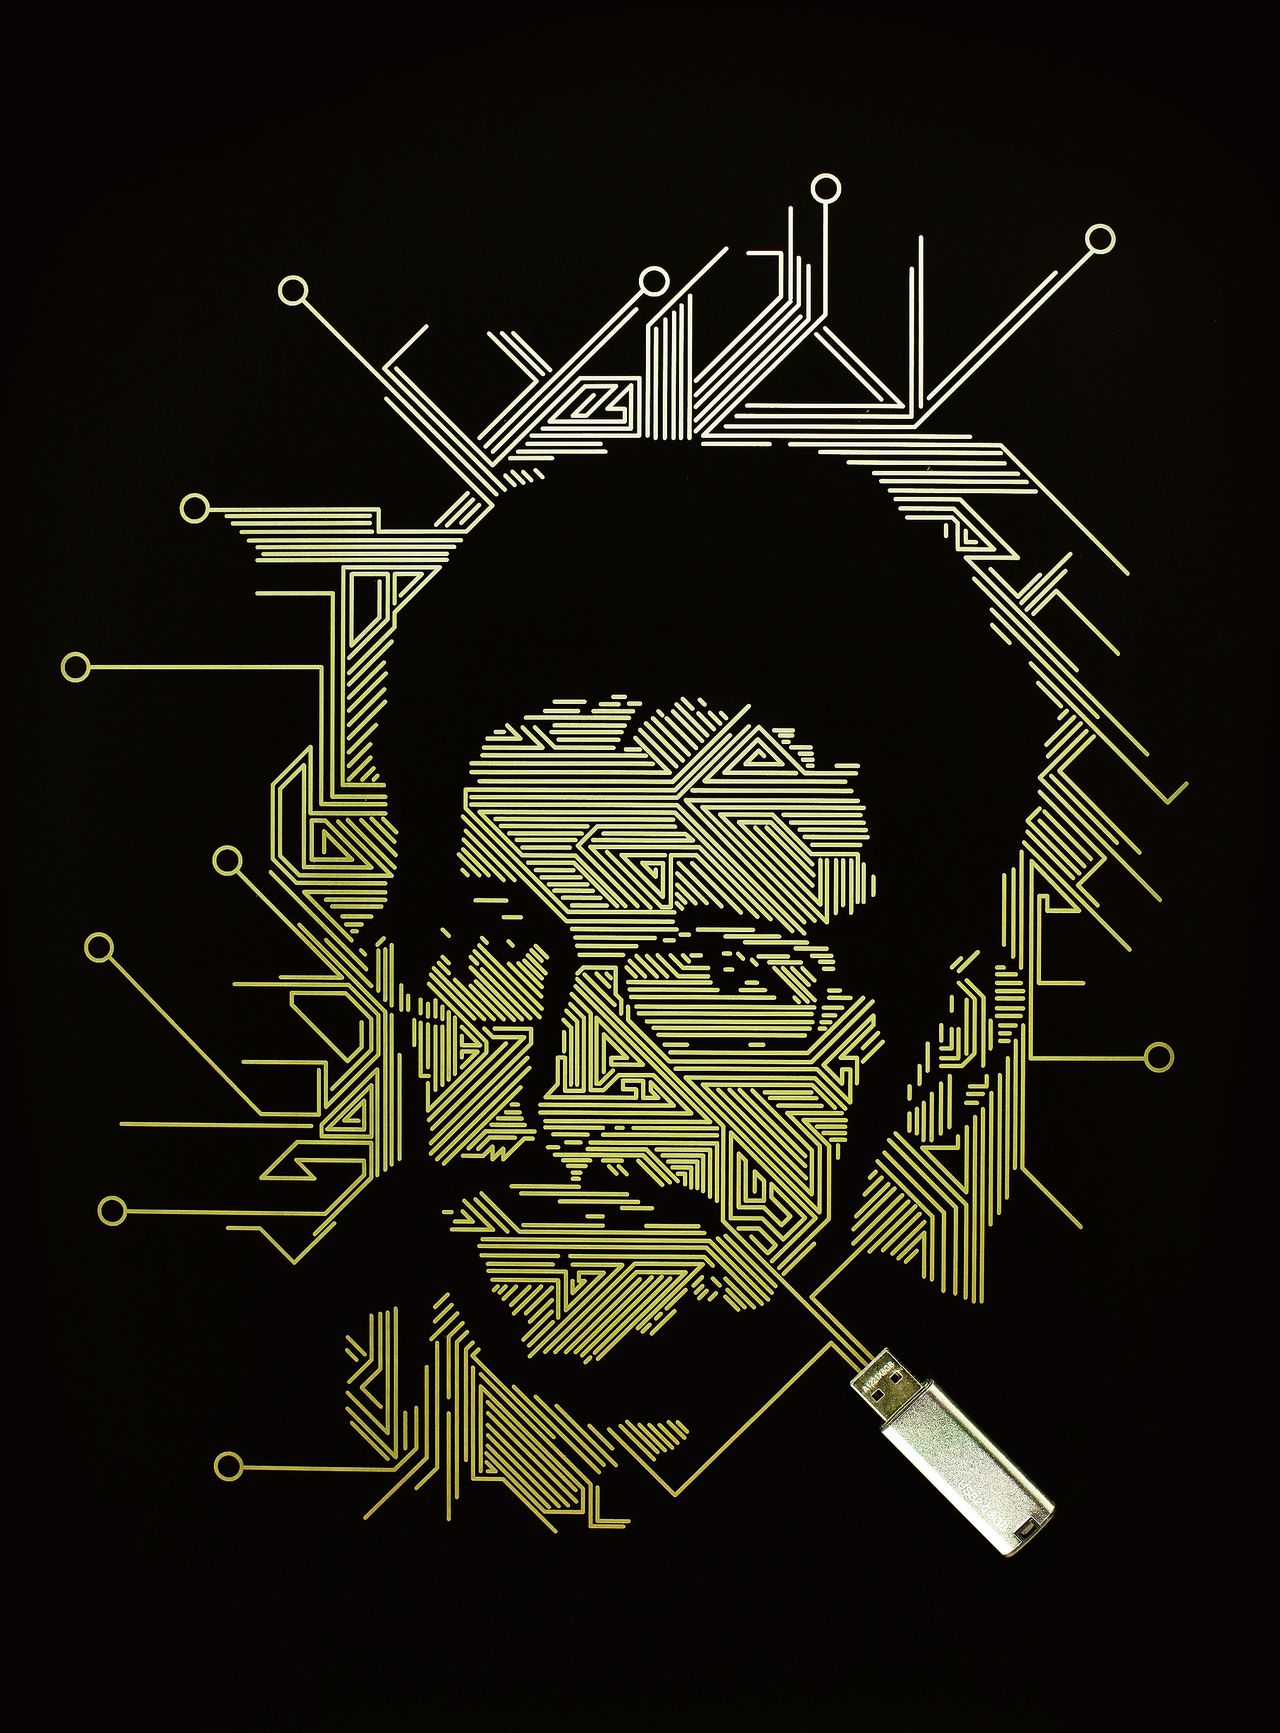 Edward Snowden foto Kyle Bean